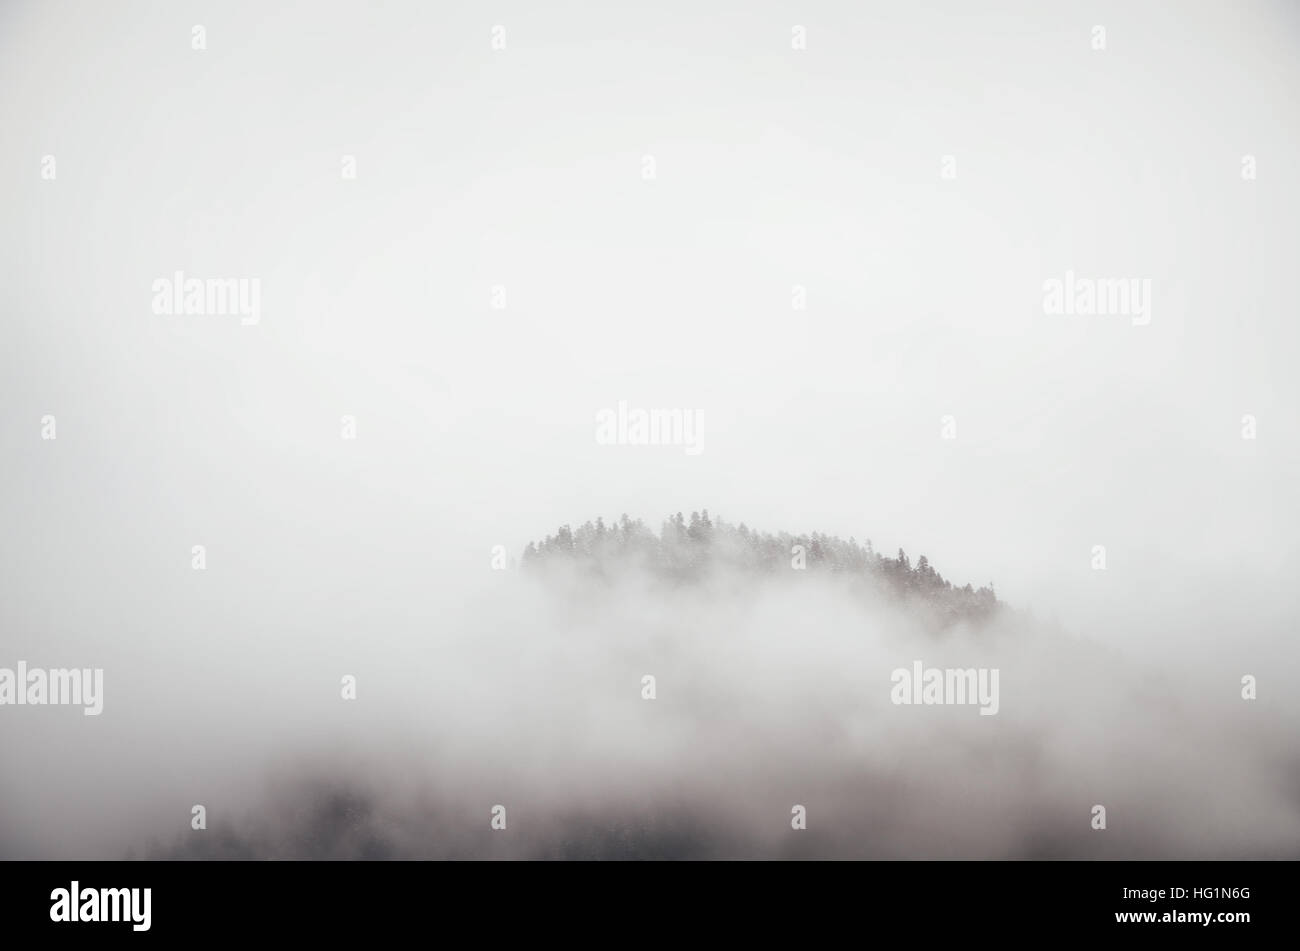 Die Wipfel der Bäume auf Hügel Nebel herausragen. Racha-Lechxumi Region, Georgia. Minimalismus in Natur-Konzept Stockfoto